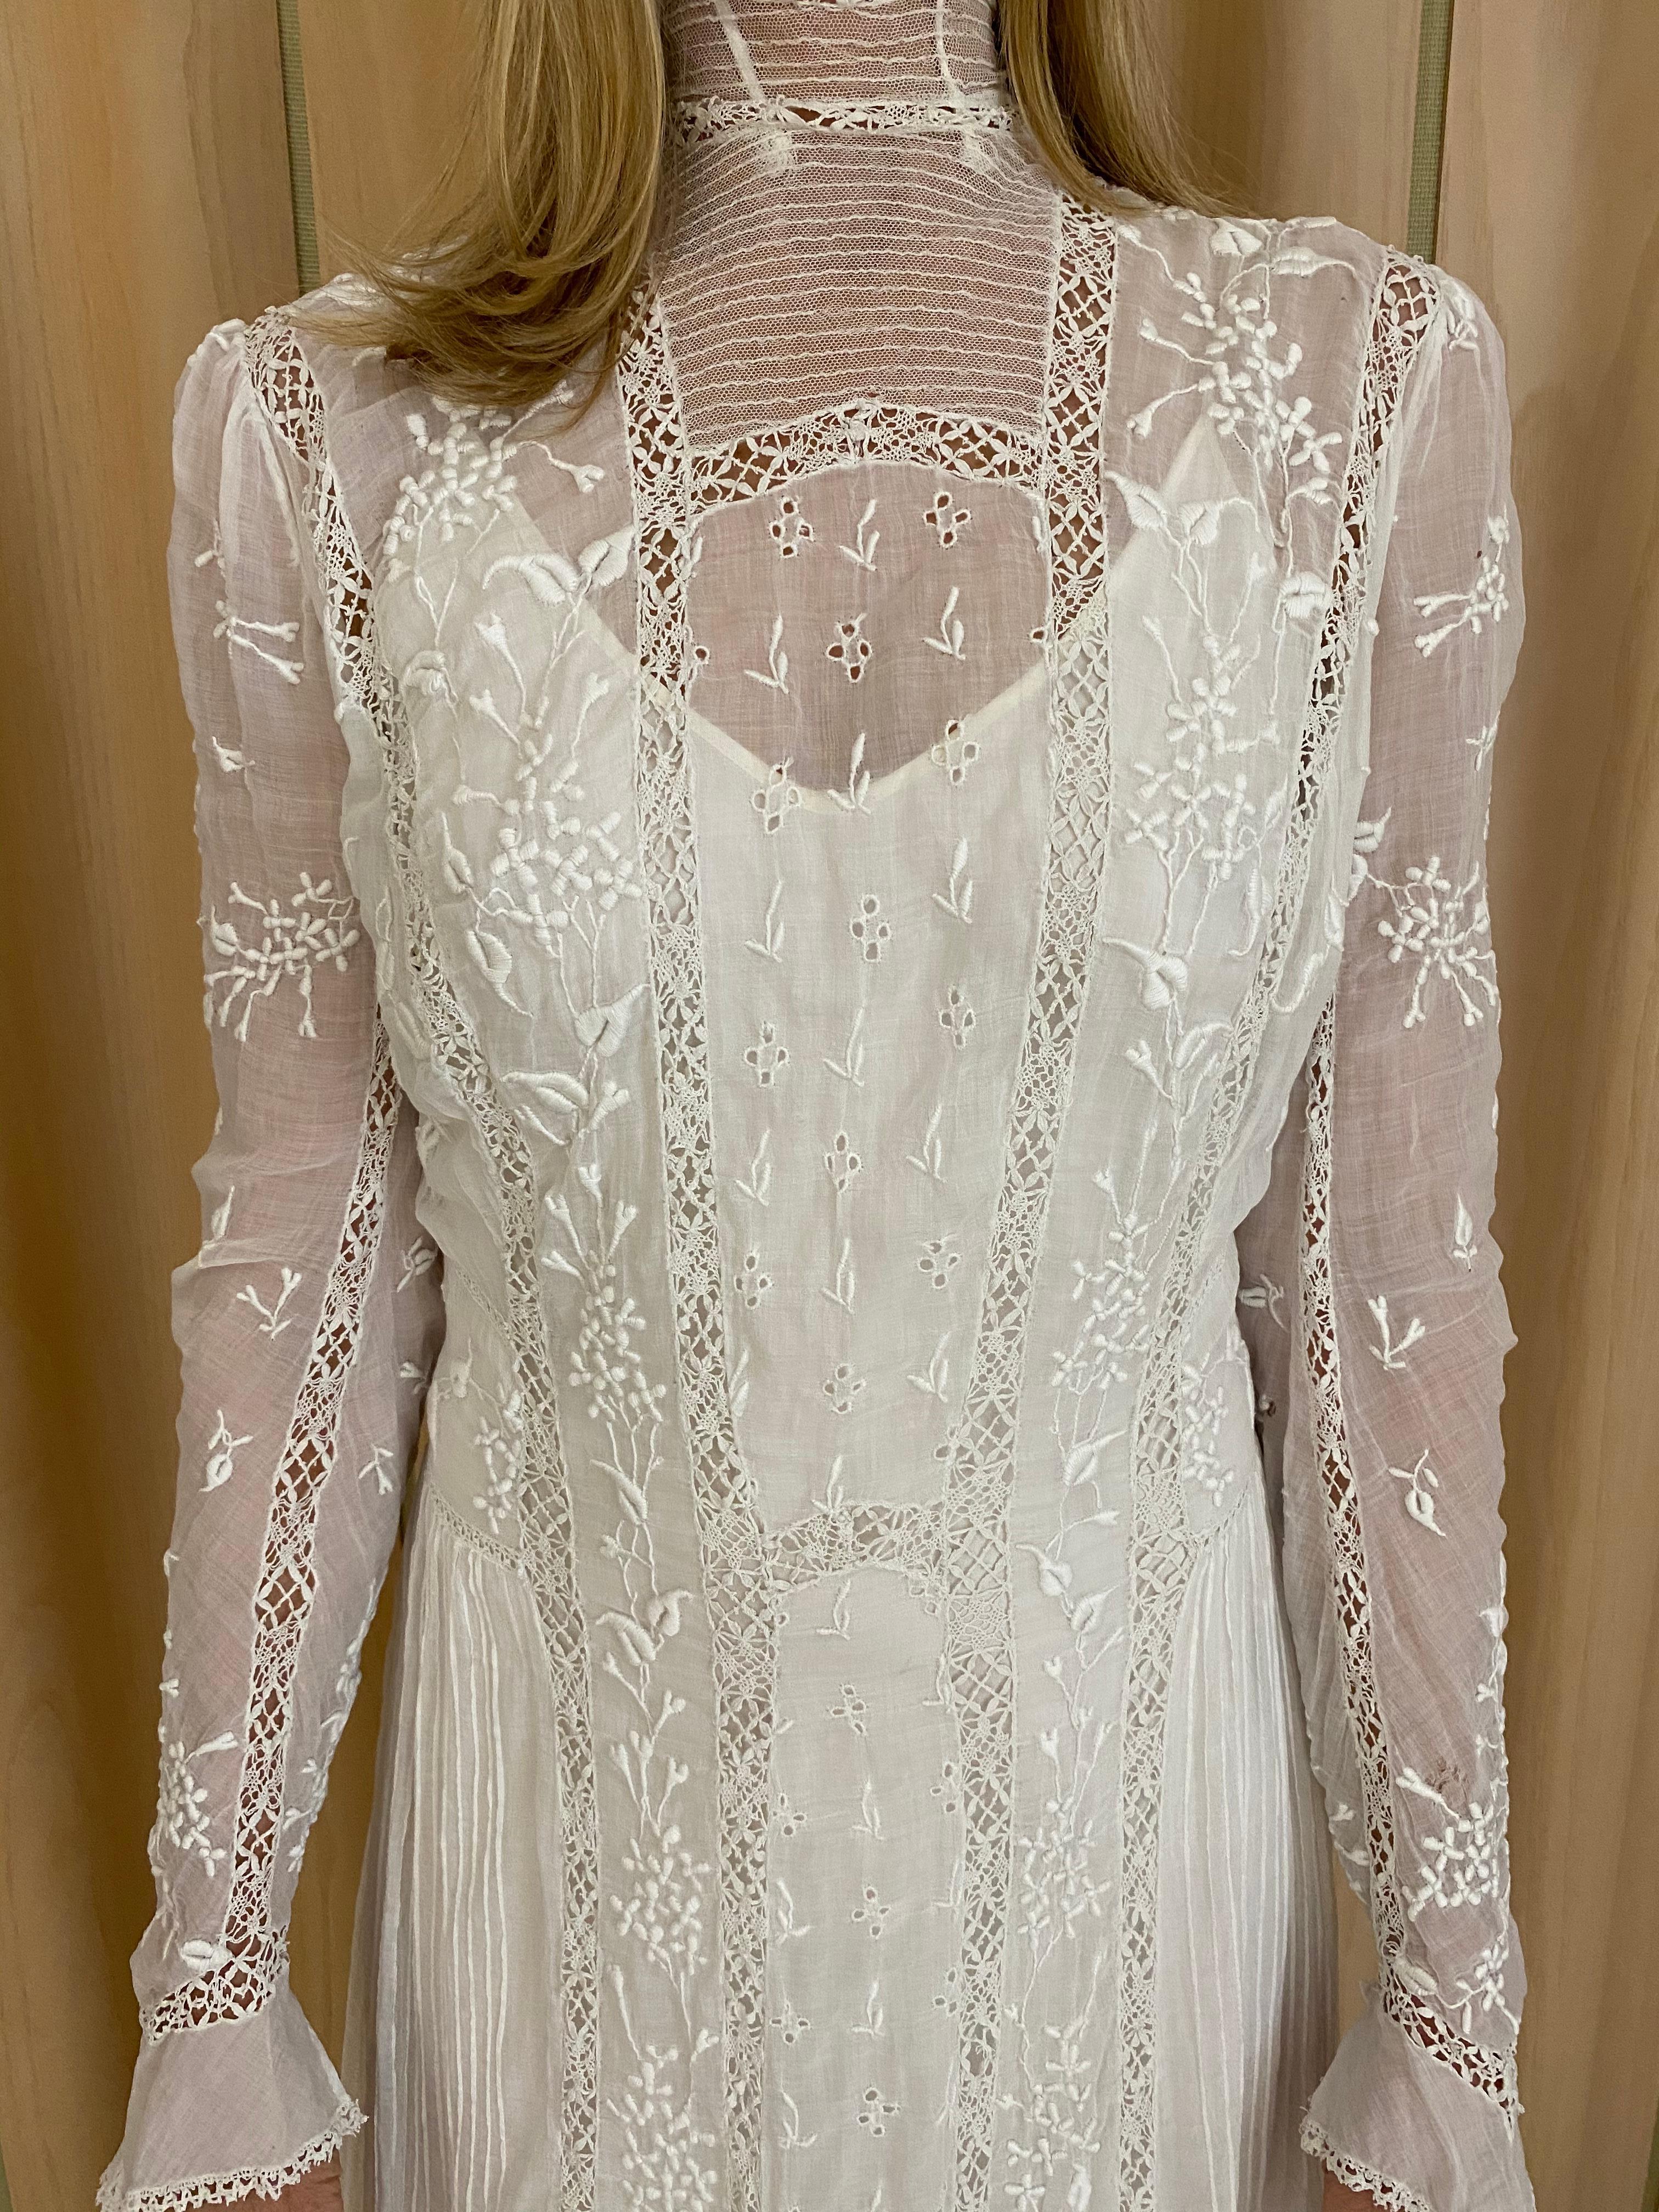 white cotton wedding dress